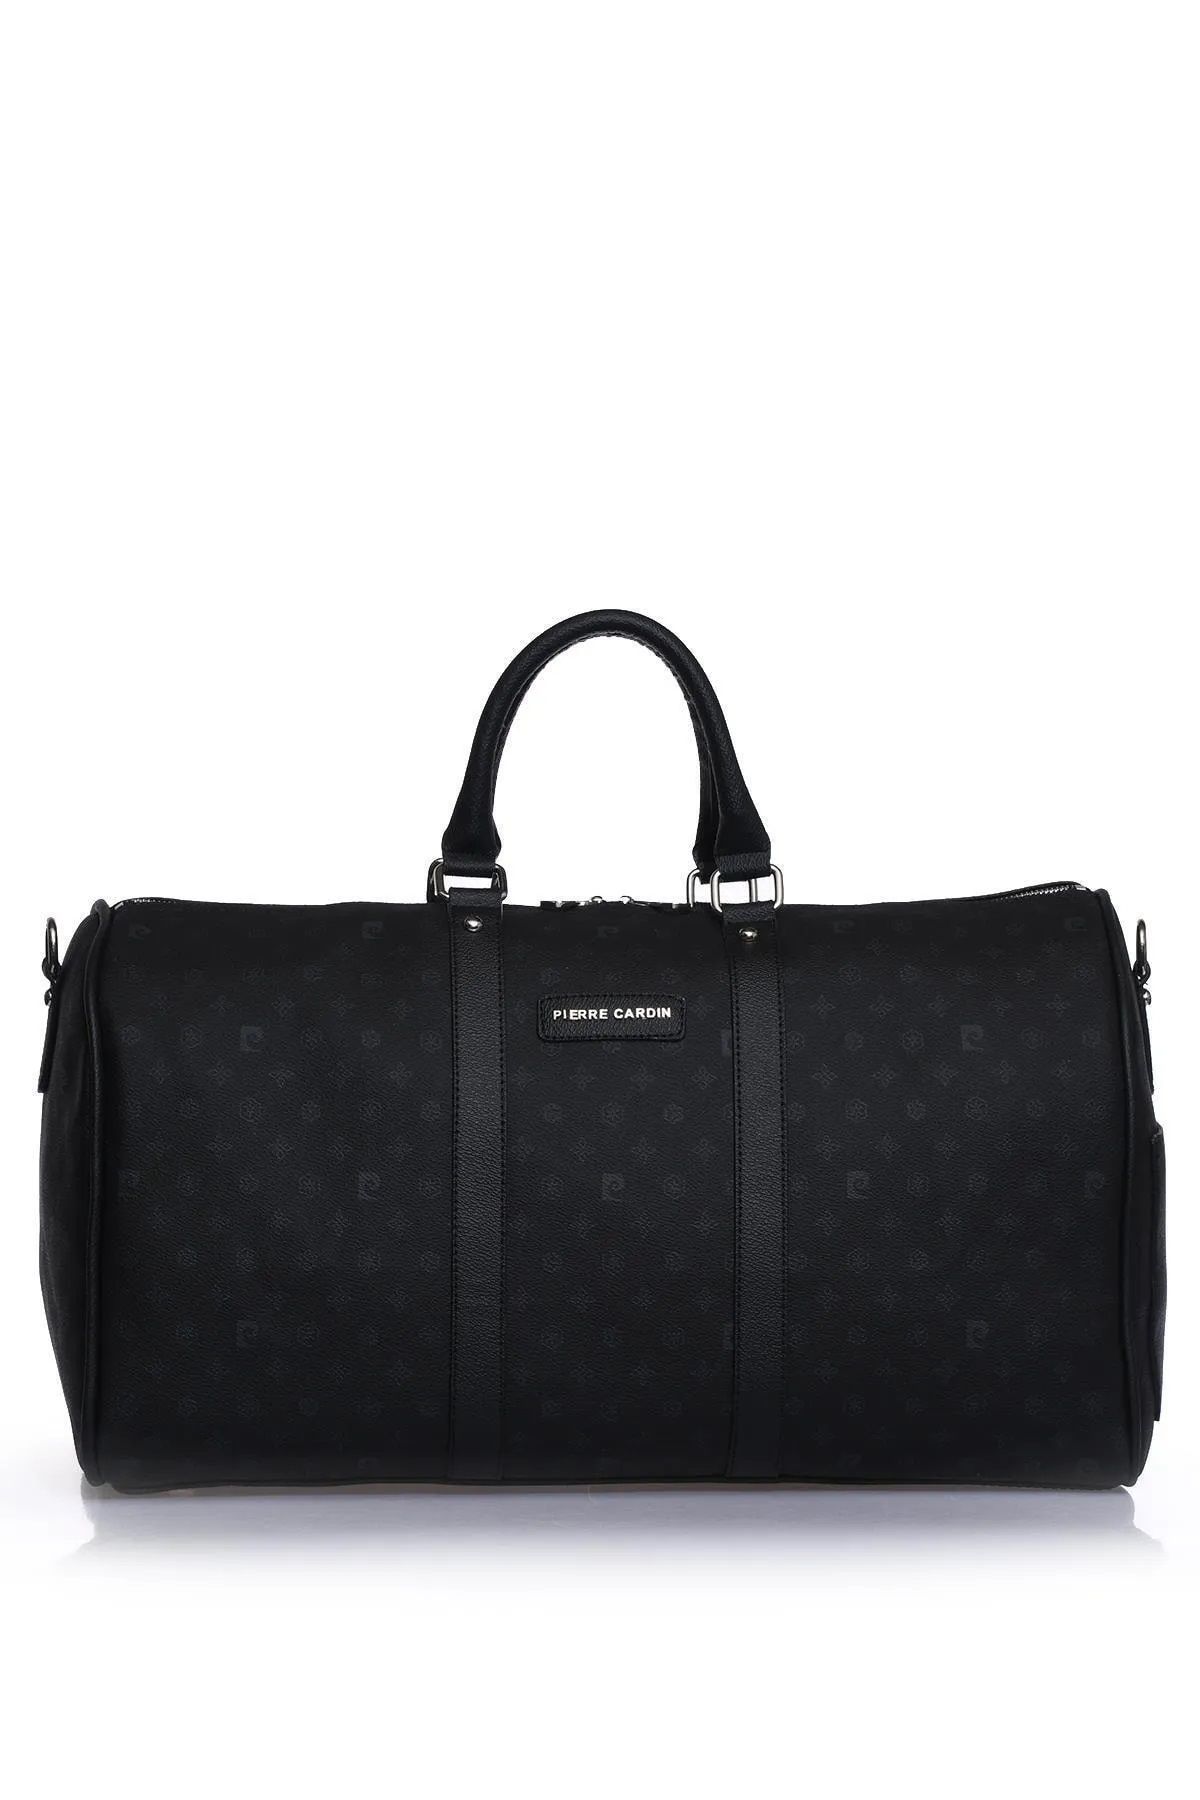 Pierre Cardin 04PC001207 El valizi Bavul Spor çantası Valiz Seyahat tatil çantası Baskılı Siyah